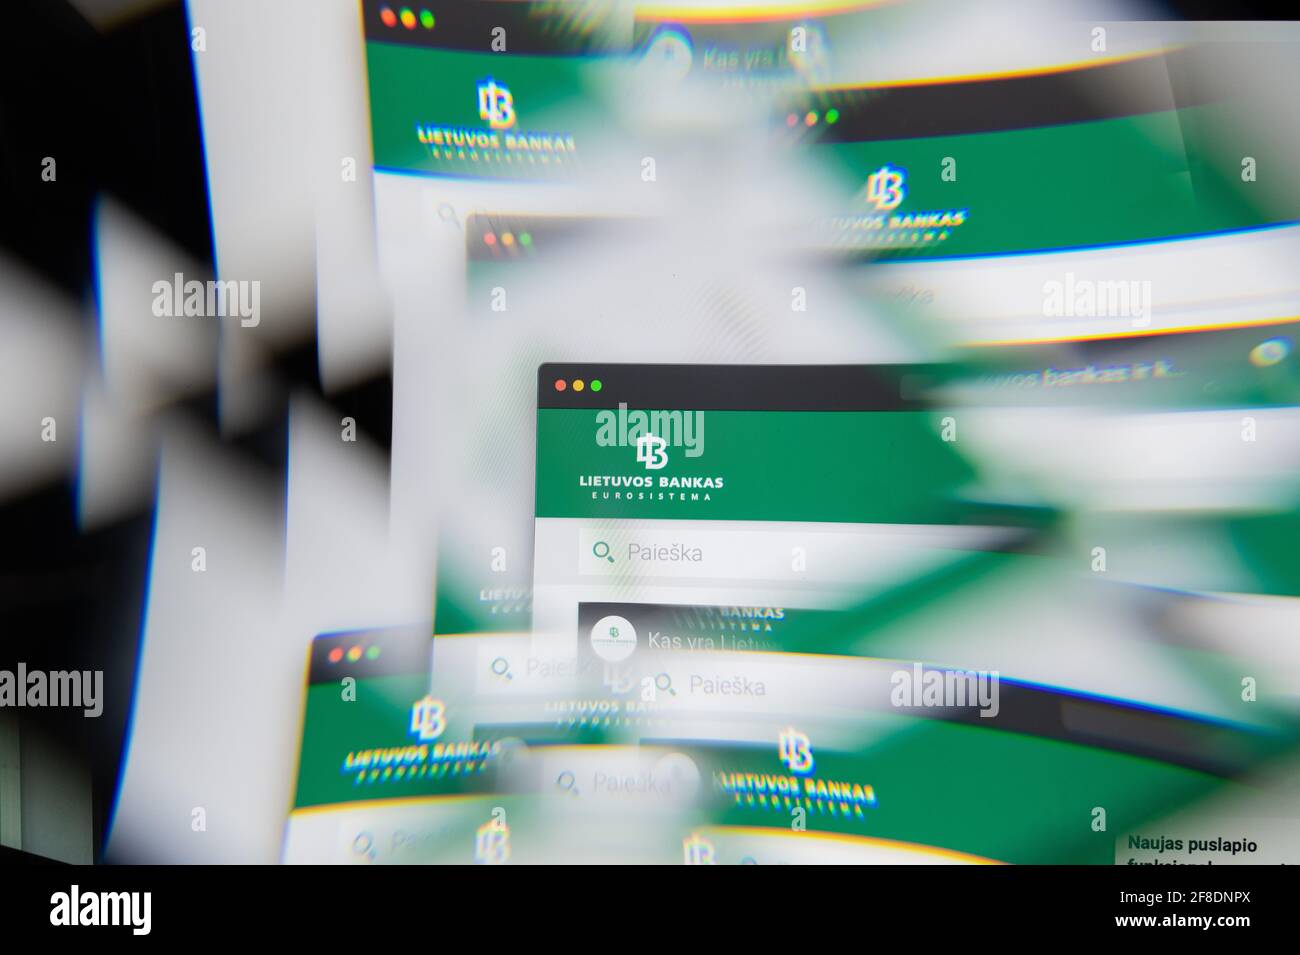 Milano, Italia - 10 APRILE 2021: Logo Lietuvos Bankas sullo schermo del laptop visto attraverso un prisma ottico. Immagine editoriale illustrativa di Lietuvos Bankas Foto Stock